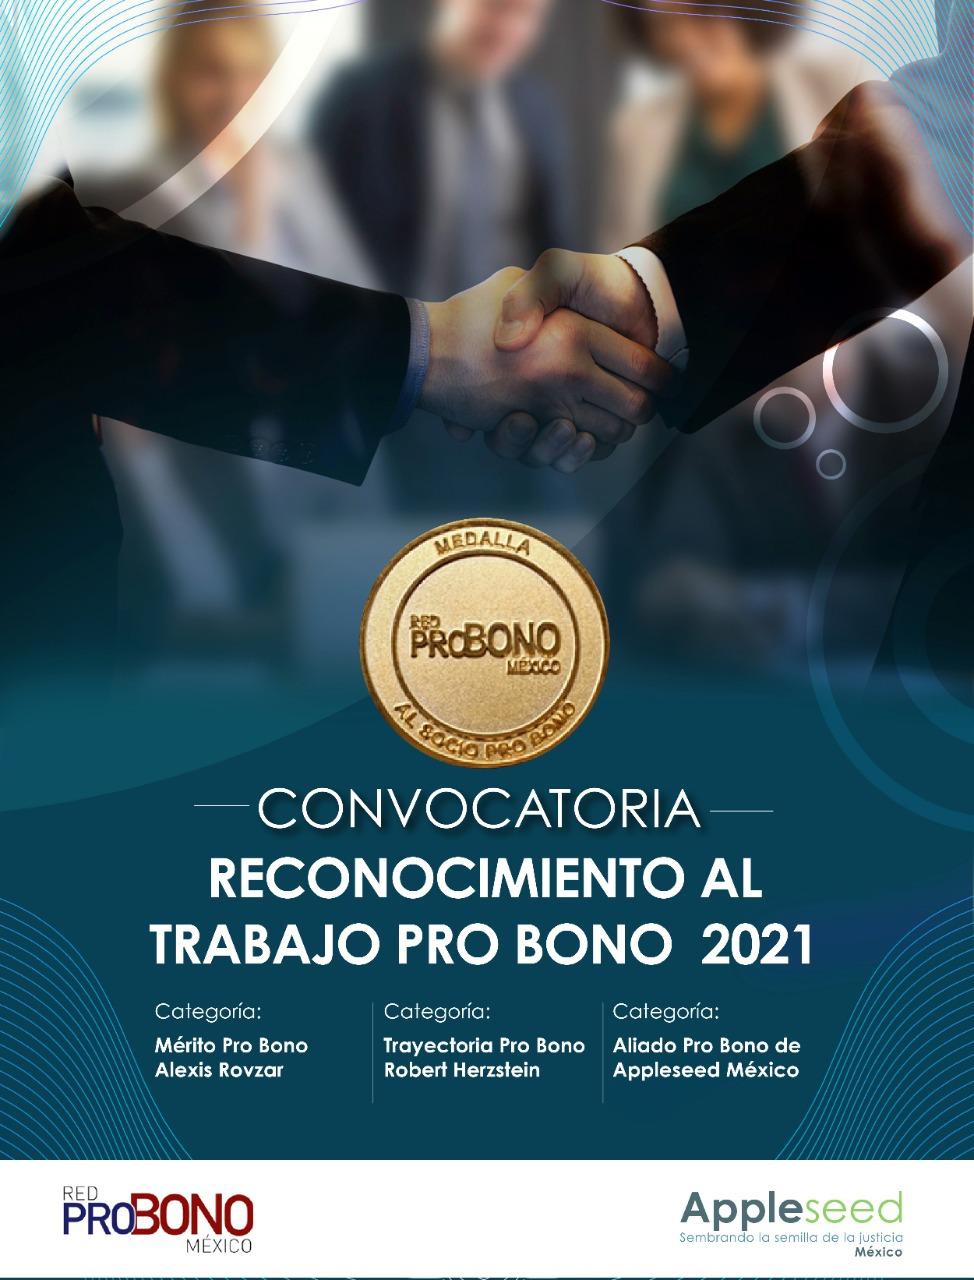 Convocatoria “Reconocimiento al trabajo Pro Bono 2021”